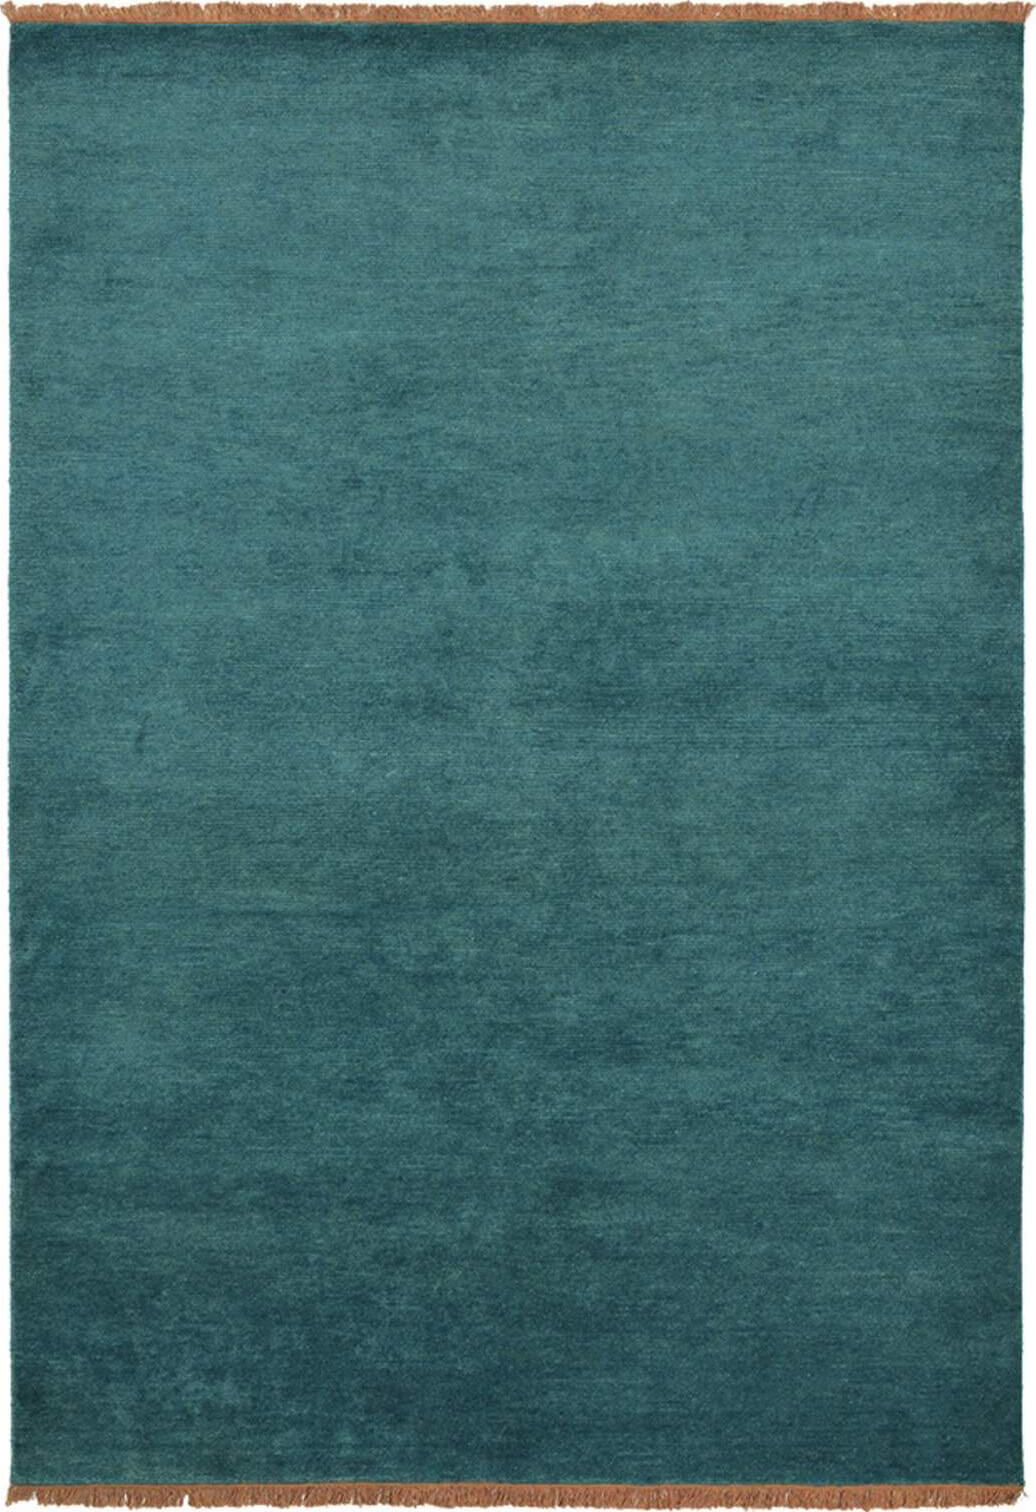 Nima Handmade Rug ☞ Size: 5' 7" x 8' (170 x 240 cm)